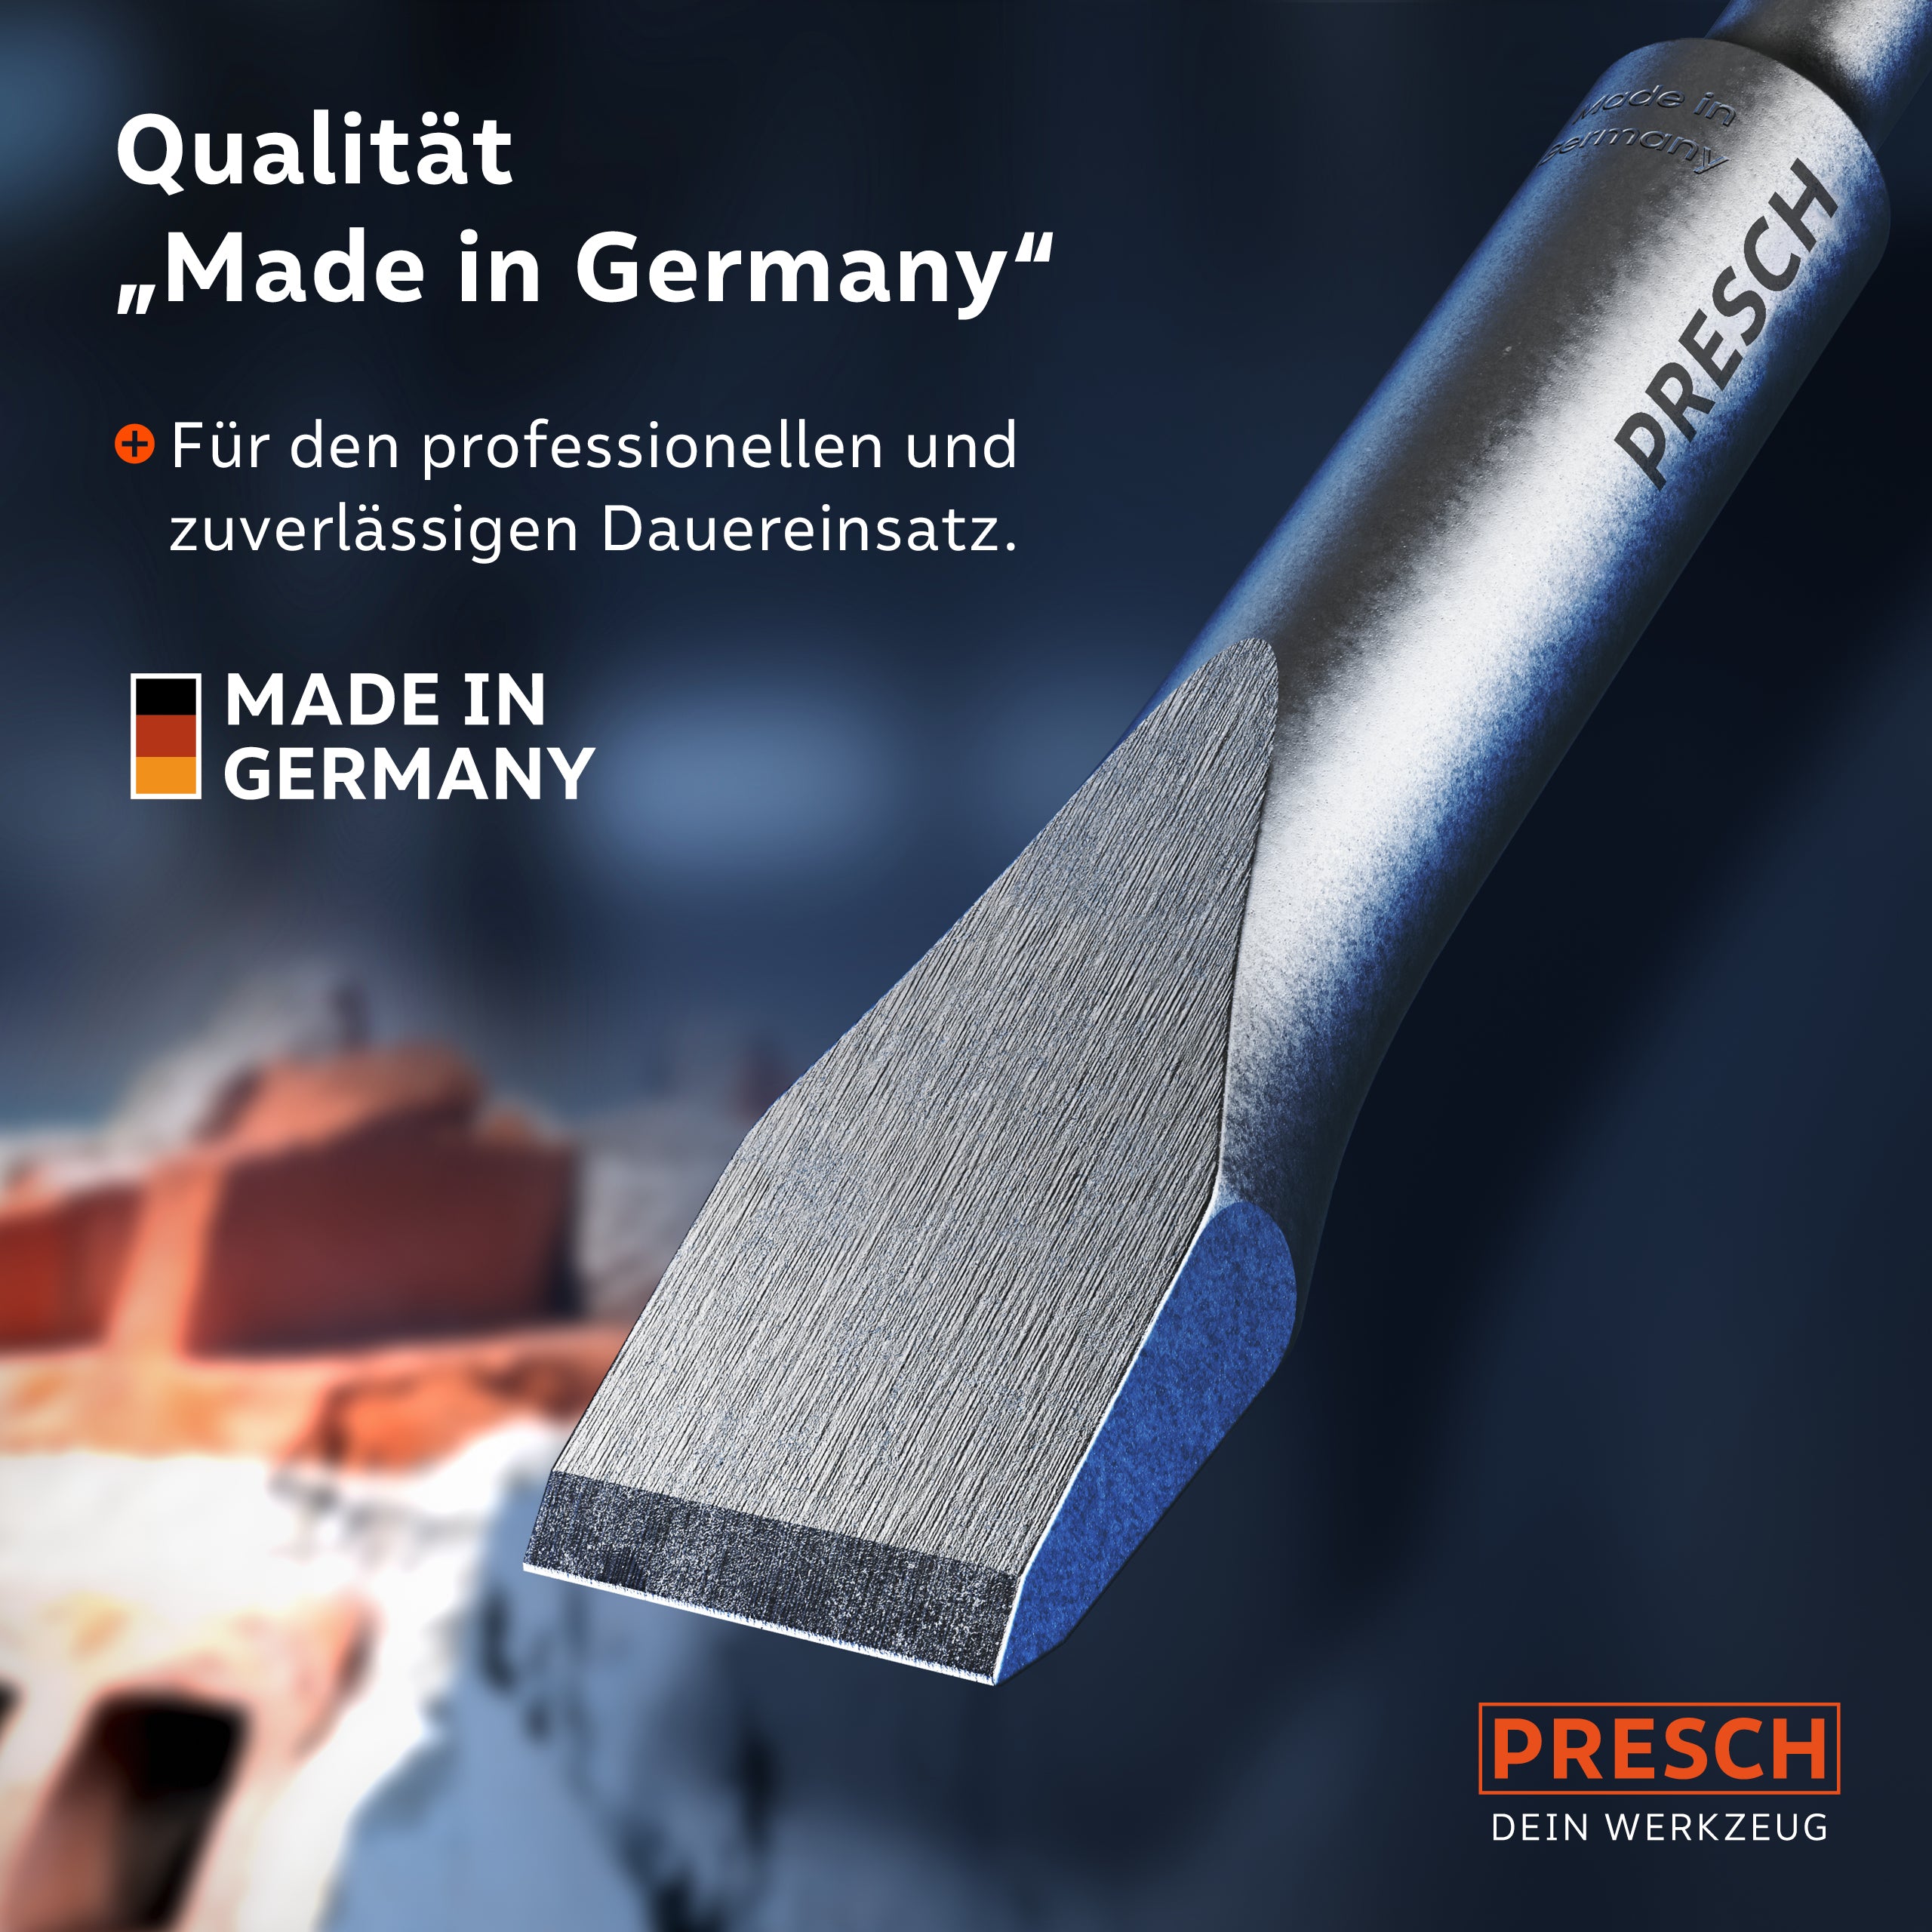 Presch Meißel Werkzeug mit Qualitätssiegel "Made in Germany" für Handwerker und industriellen Einsatz